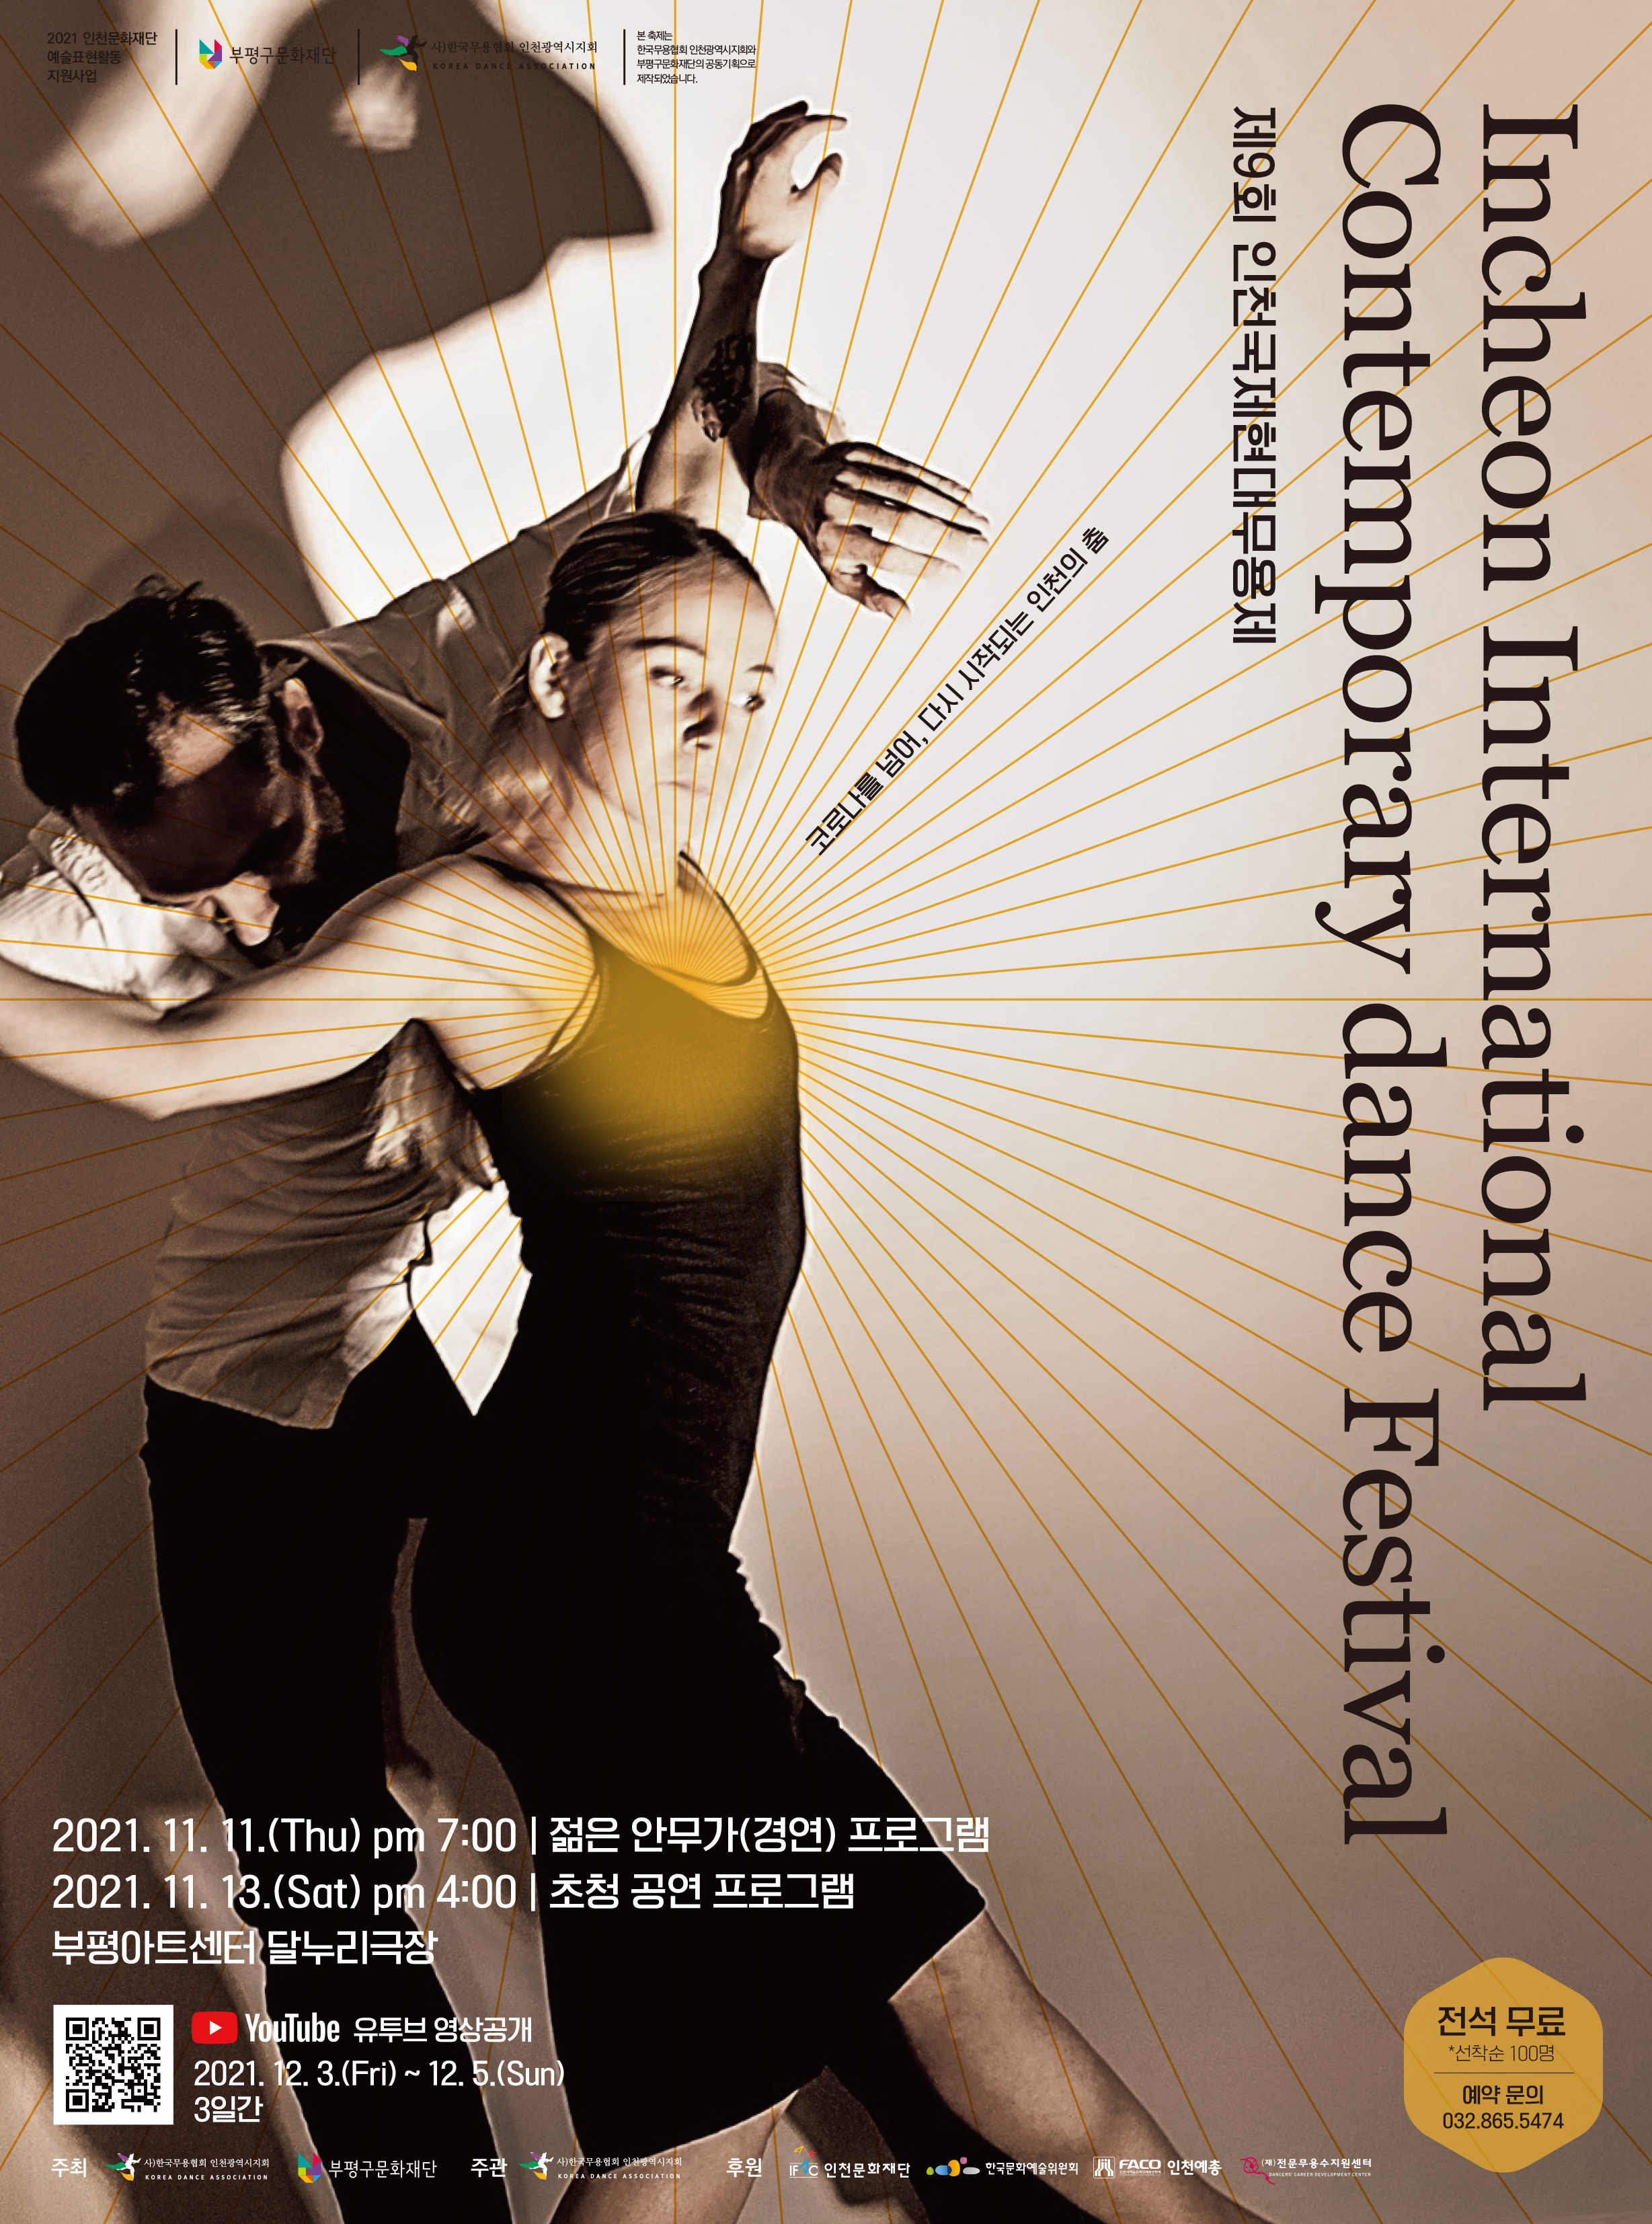 제 9회 인천국제현대무용제(Incheon International Contemporary dance Festival) 관련 포스터 - 자세한 내용은 본문참조